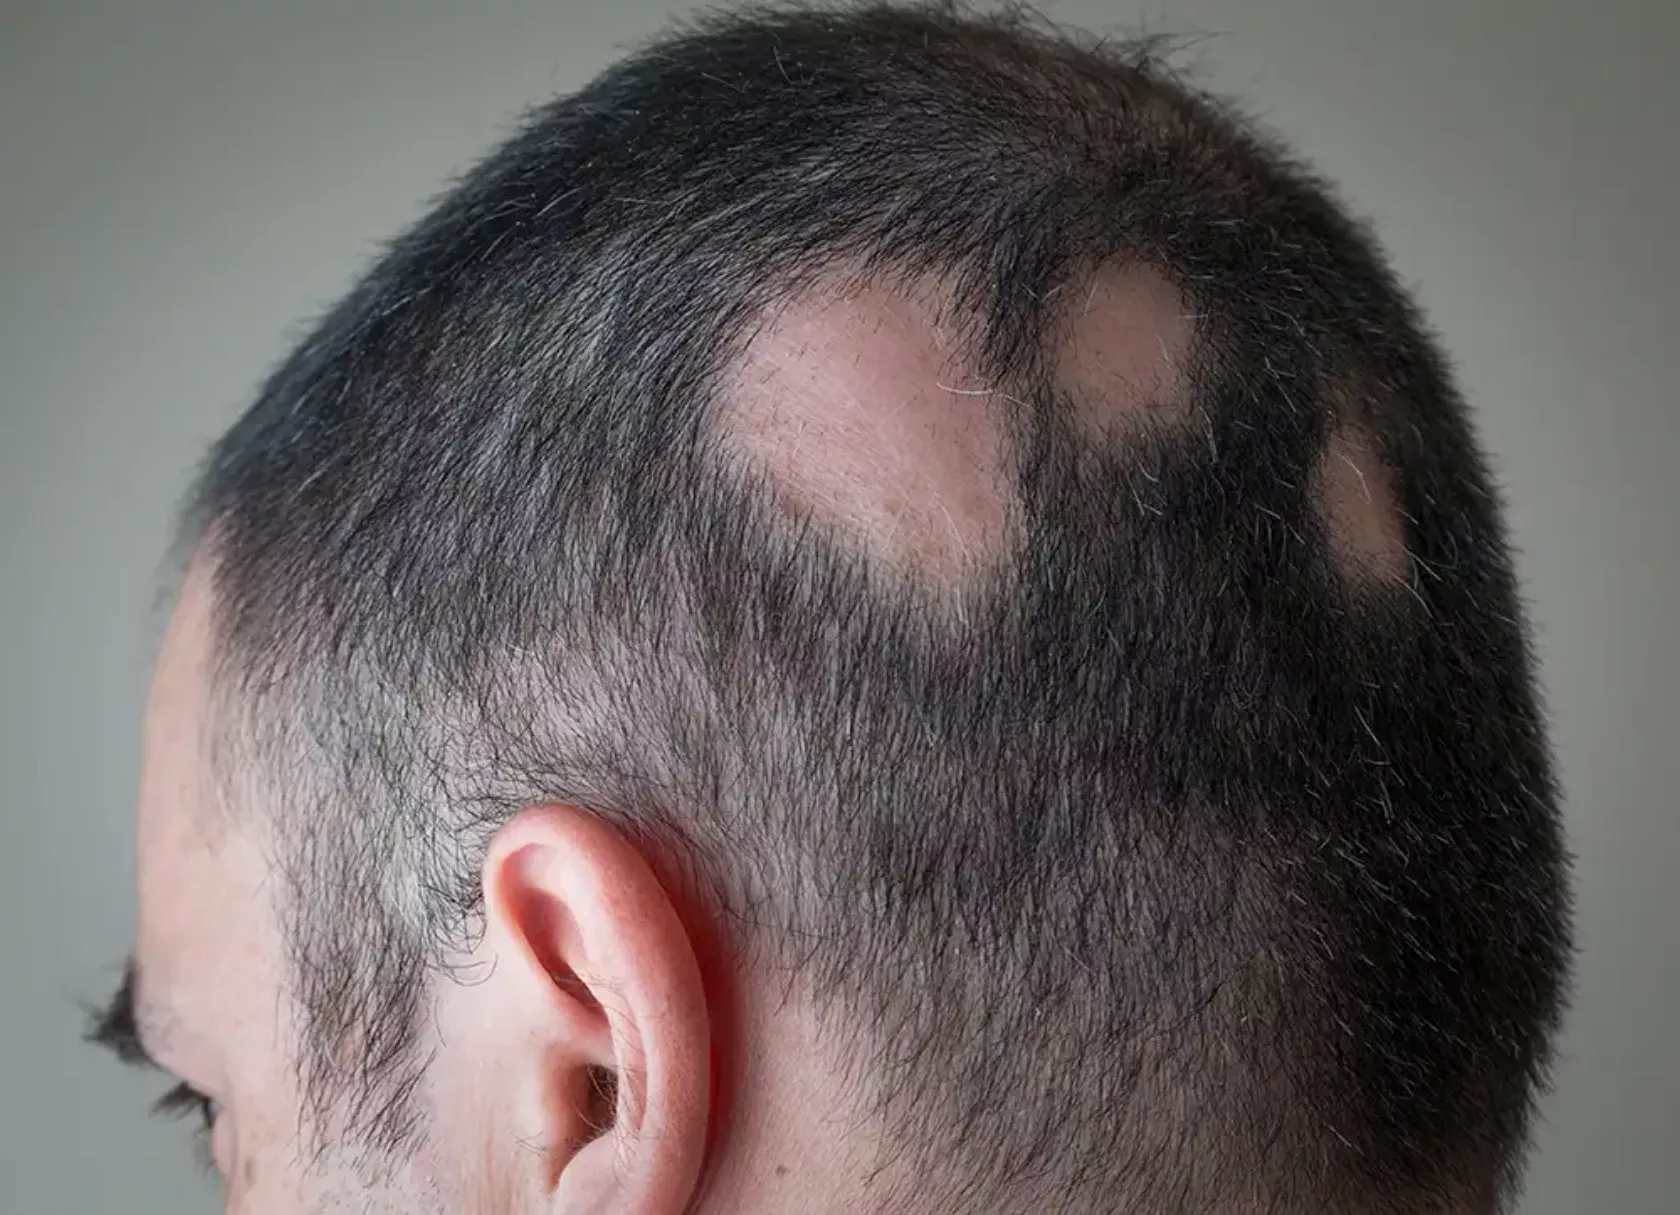 Hinterkopf eines kurzhaarigen Mannes mit drei runden kahlen Stellen - kreisrunder Haarausfall.